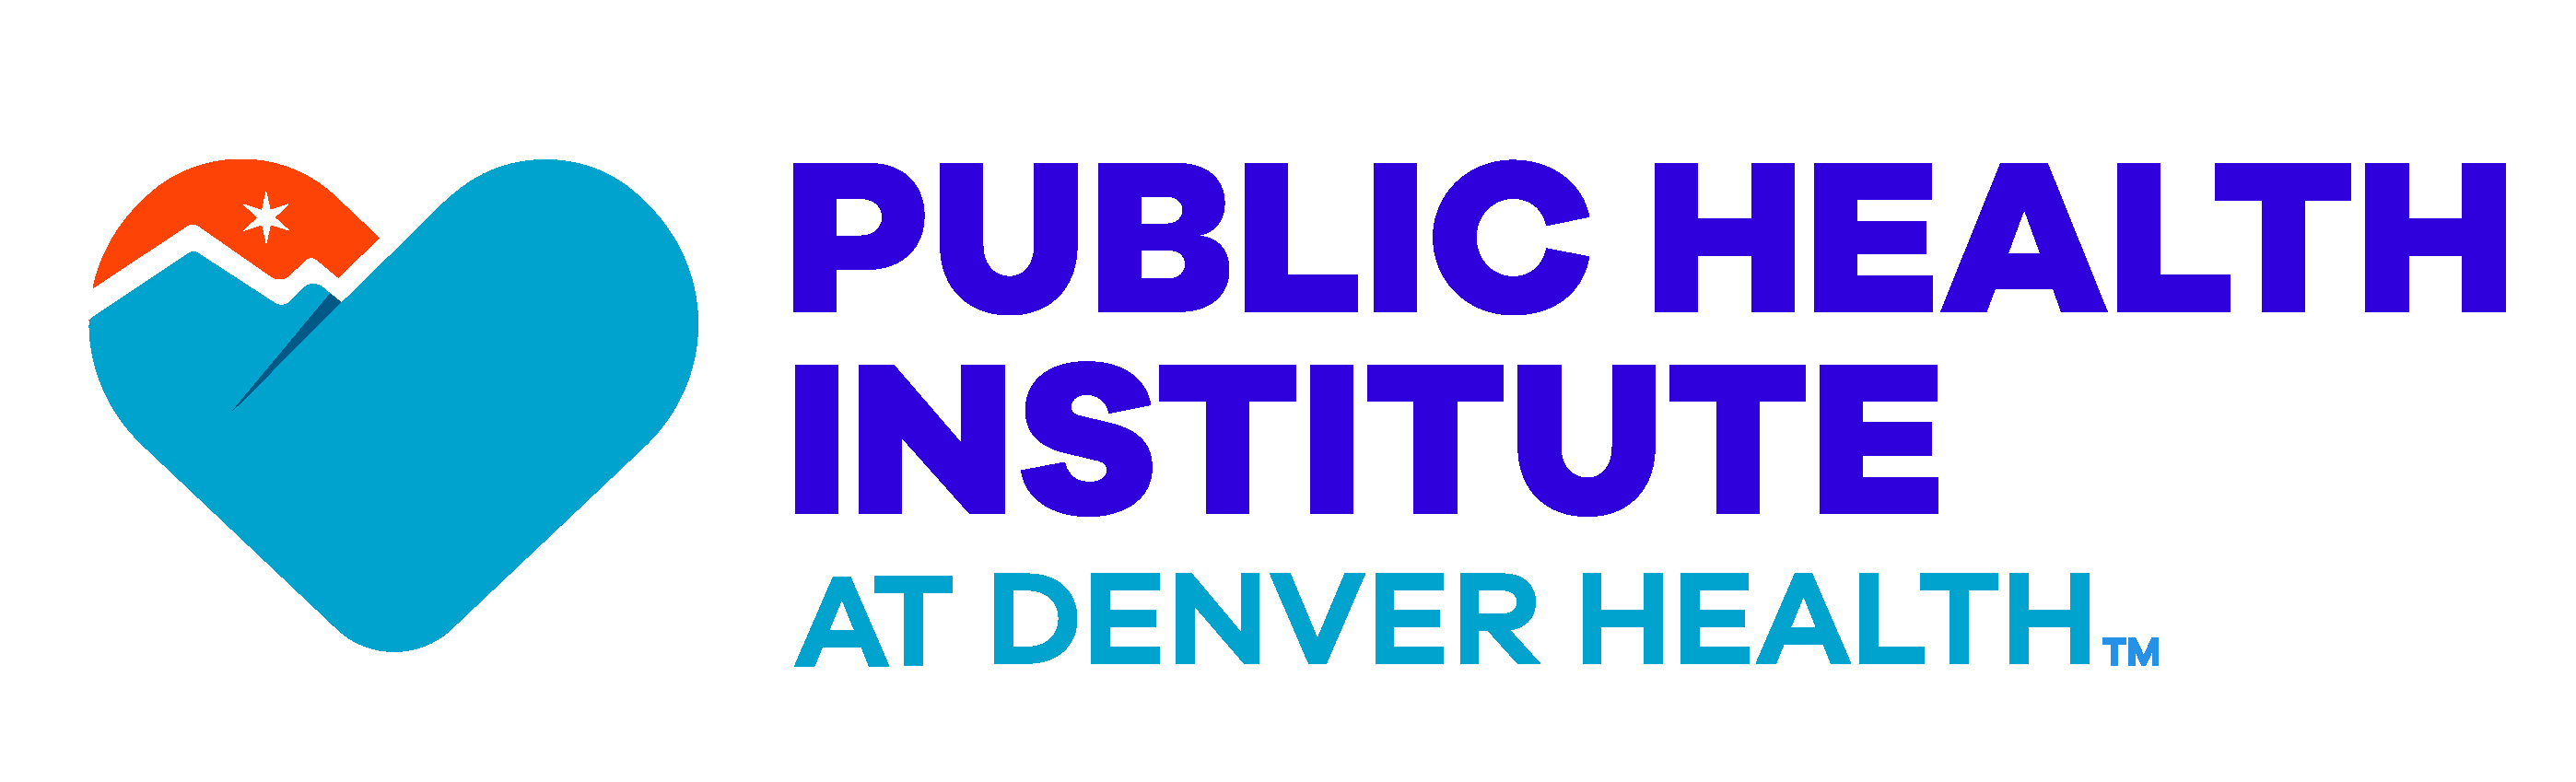 Public Health Institute at Denver Health